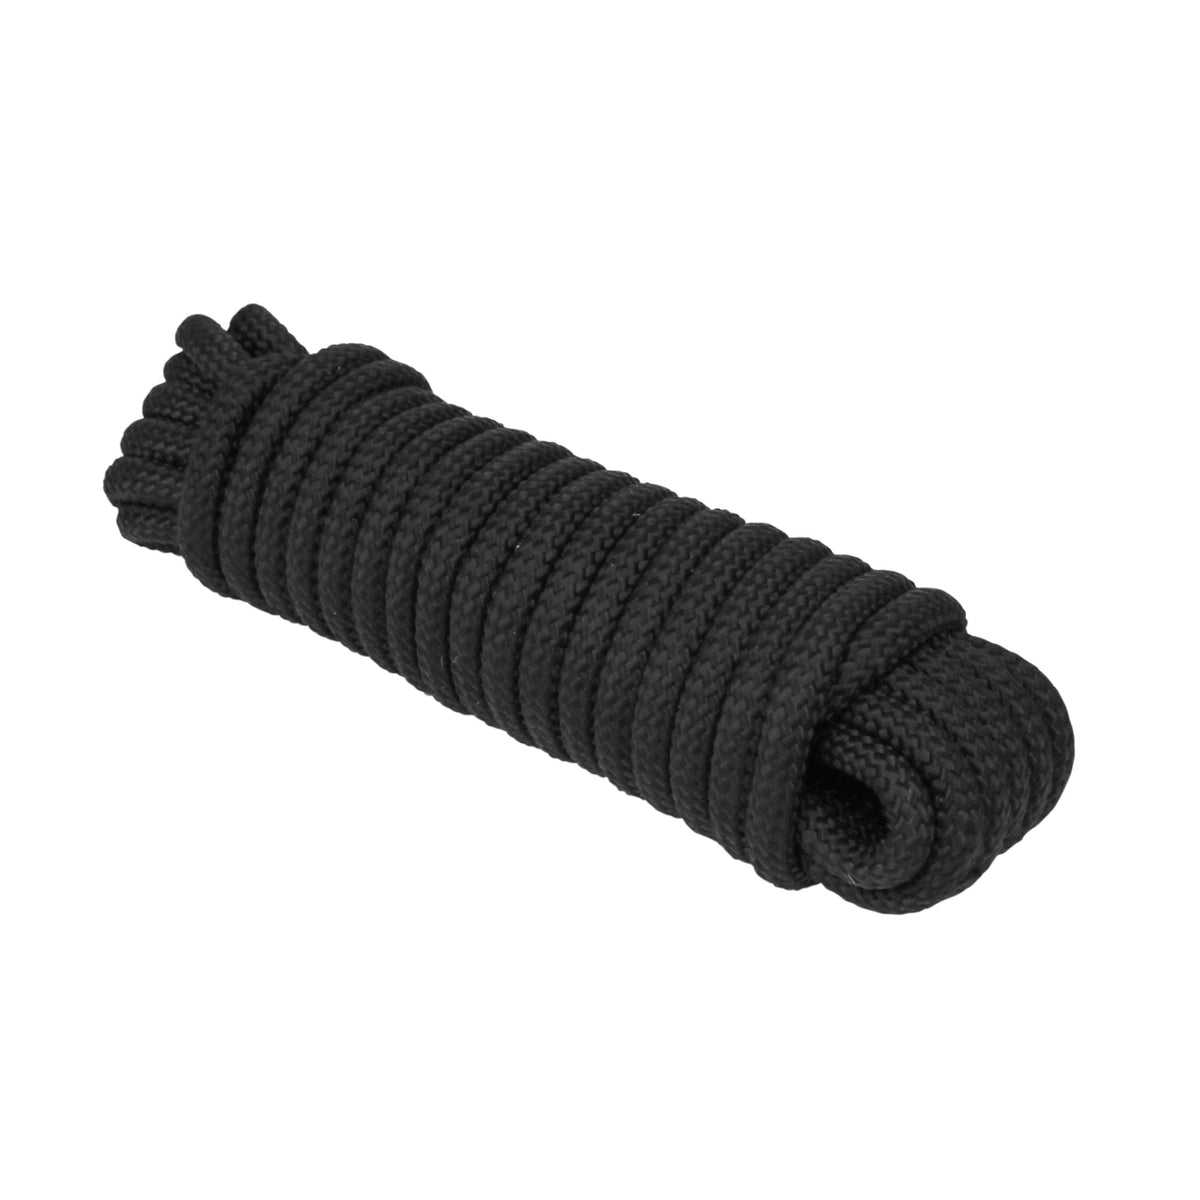 Extreme Max Diamond Braid Utility Rope 1/4" 50' Black #3008.0304